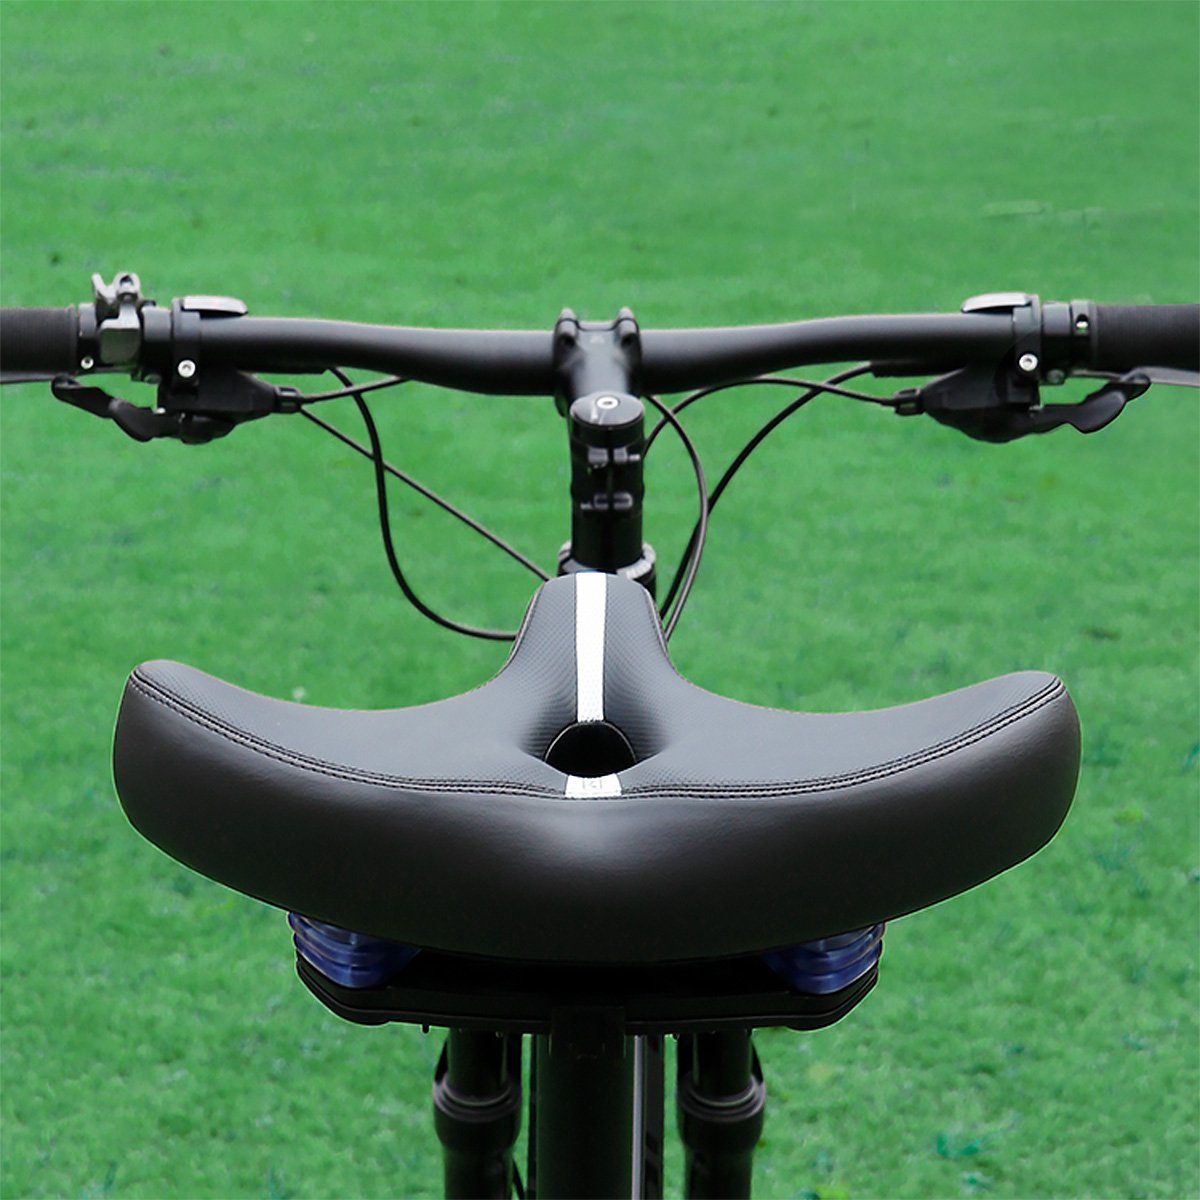 extra O-Zone atmungsaktiv breiten und MidGard mit mit (1-tlg) gepolsterten Fahrradsattel Fahrradsitz